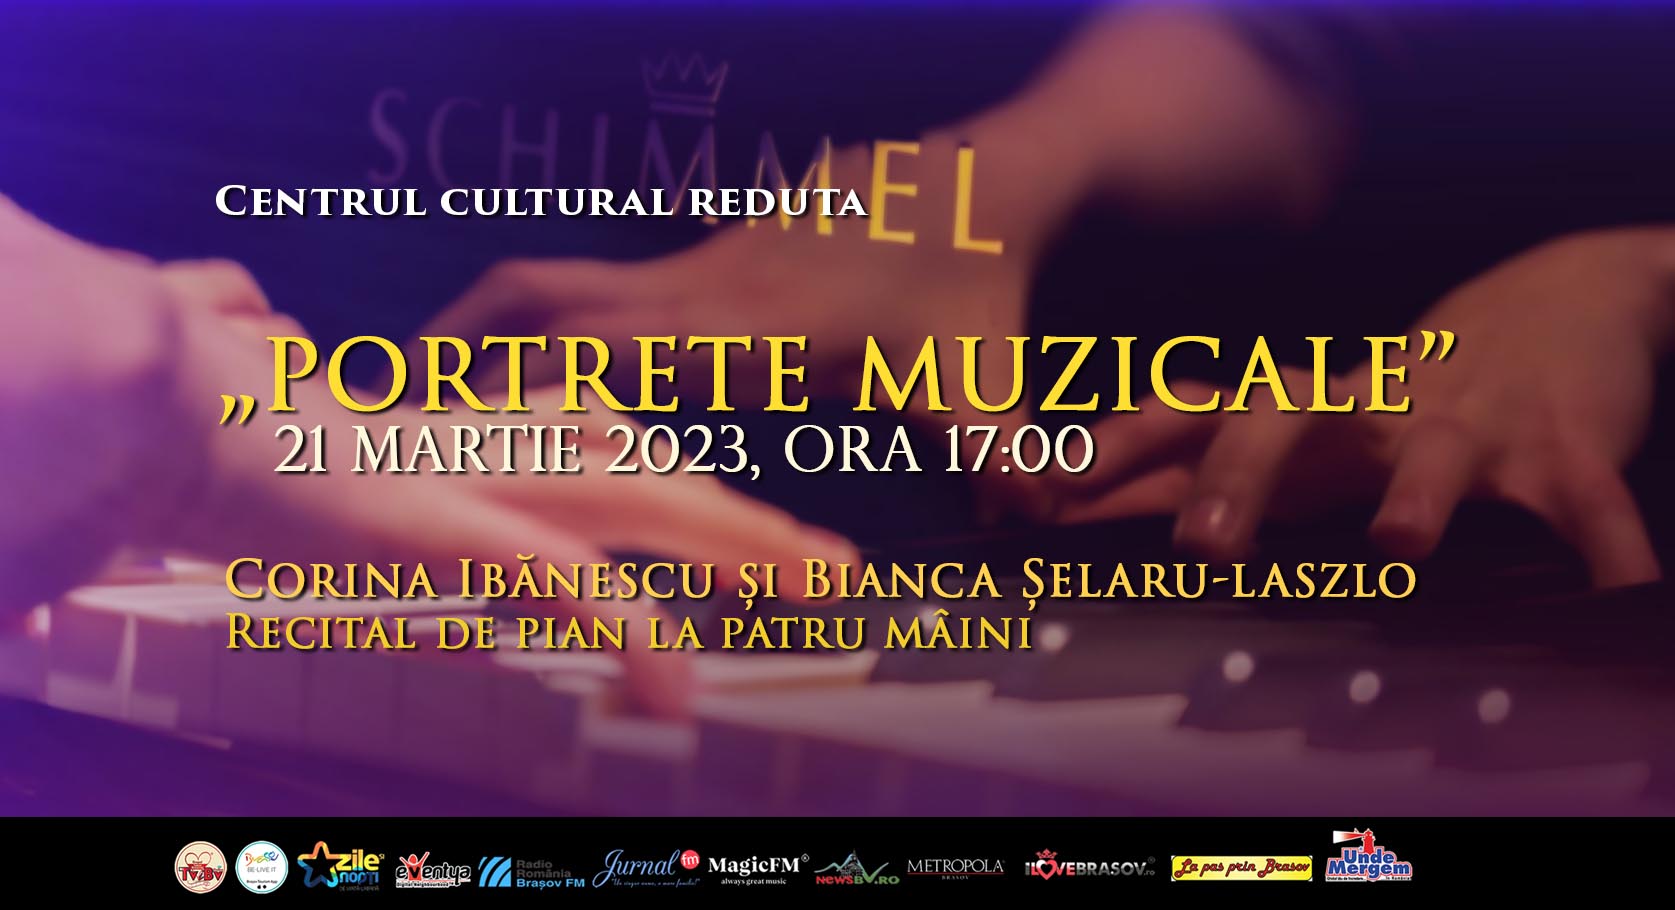 PORTRETE MUZICALE. Recital la patru mâini cu pianista Corina Ibănescu și cu Bianca Șelaru (Laszlo) în 21 martie 2023